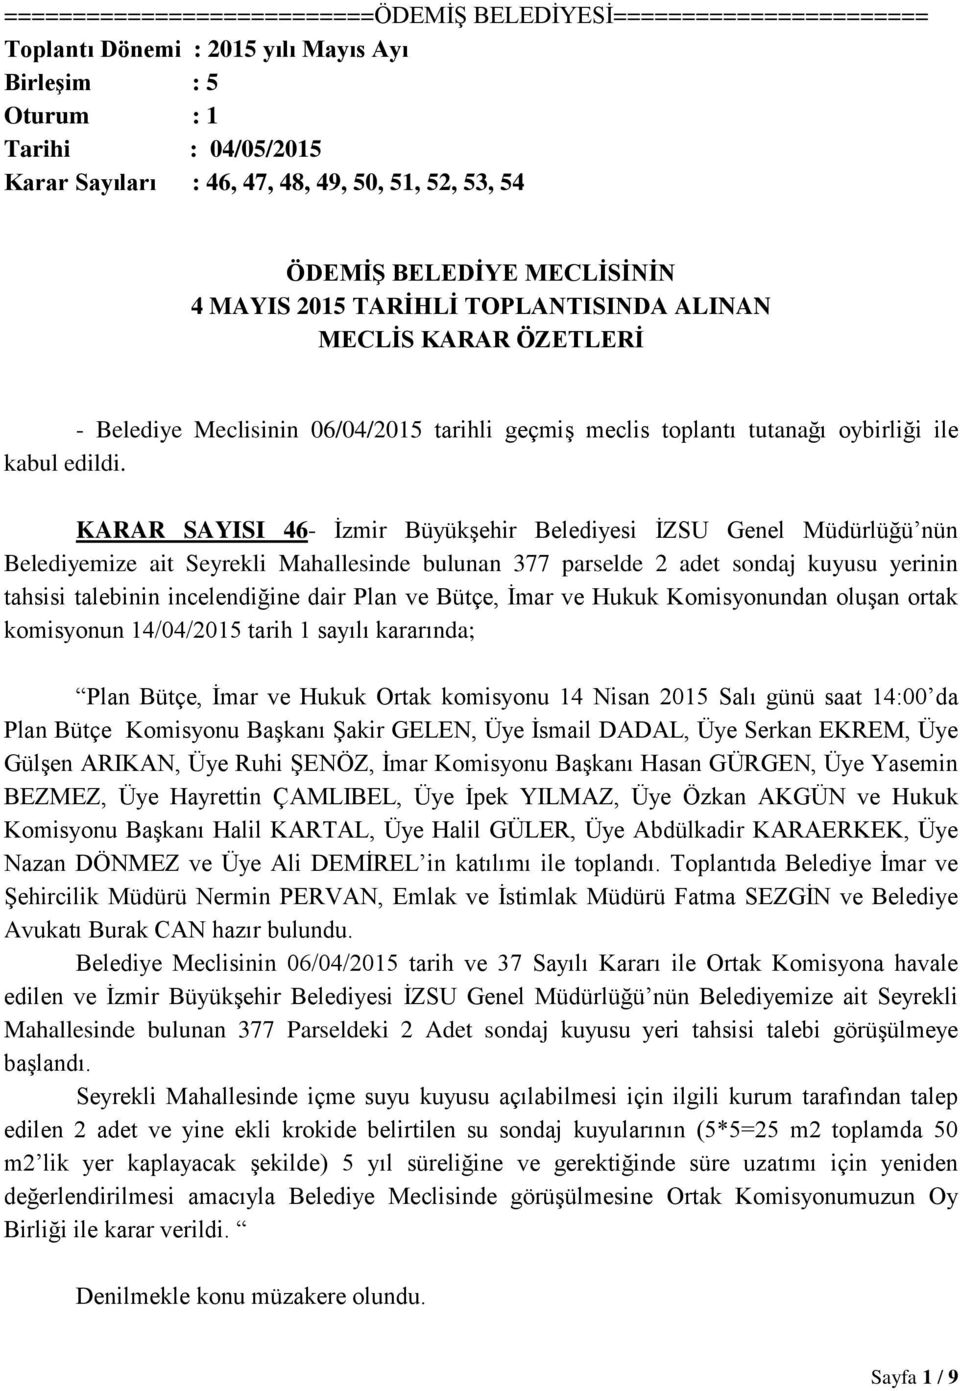 KARAR SAYISI 46- İzmir Büyükşehir Belediyesi İZSU Genel Müdürlüğü nün Belediyemize ait Seyrekli Mahallesinde bulunan 377 parselde 2 adet sondaj kuyusu yerinin tahsisi talebinin incelendiğine dair